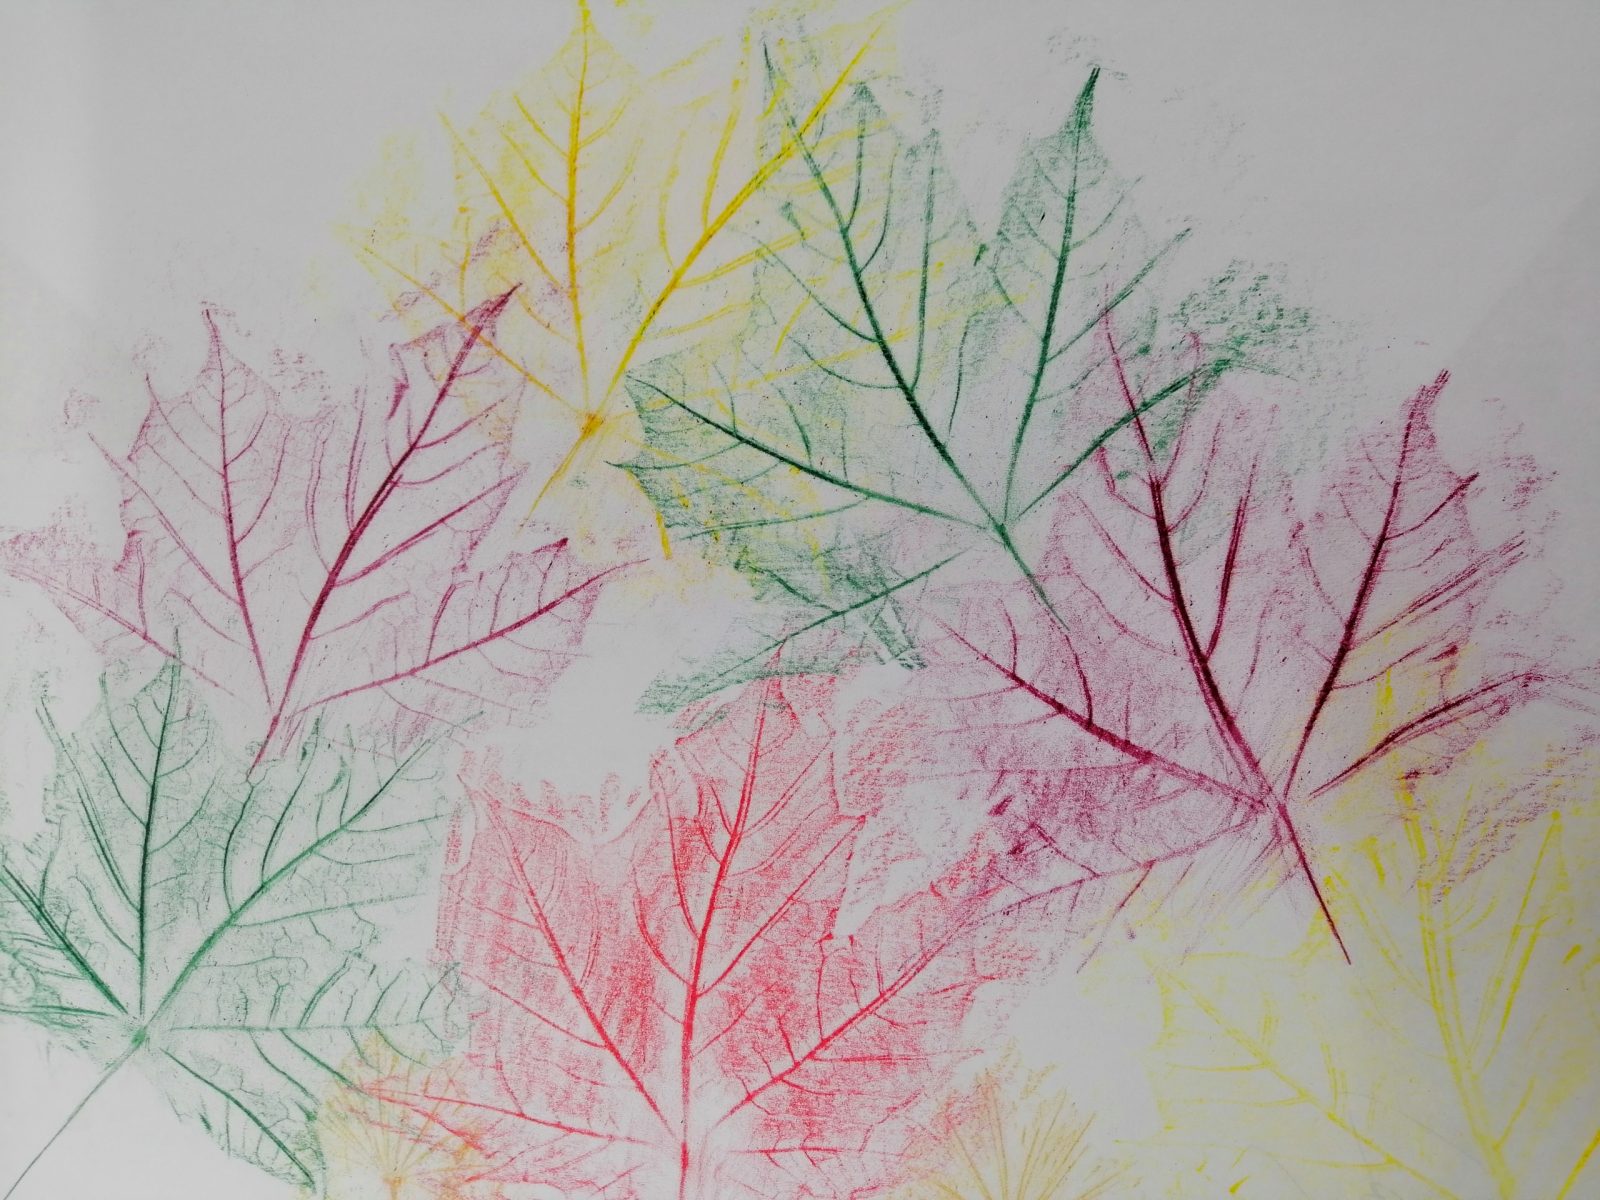 Kompozycja plastyczna struktur jesiennych liści w układzie symetrycznym. Praca wykonana w technice frotażu z użyciem barw ciepłych i zimnych.